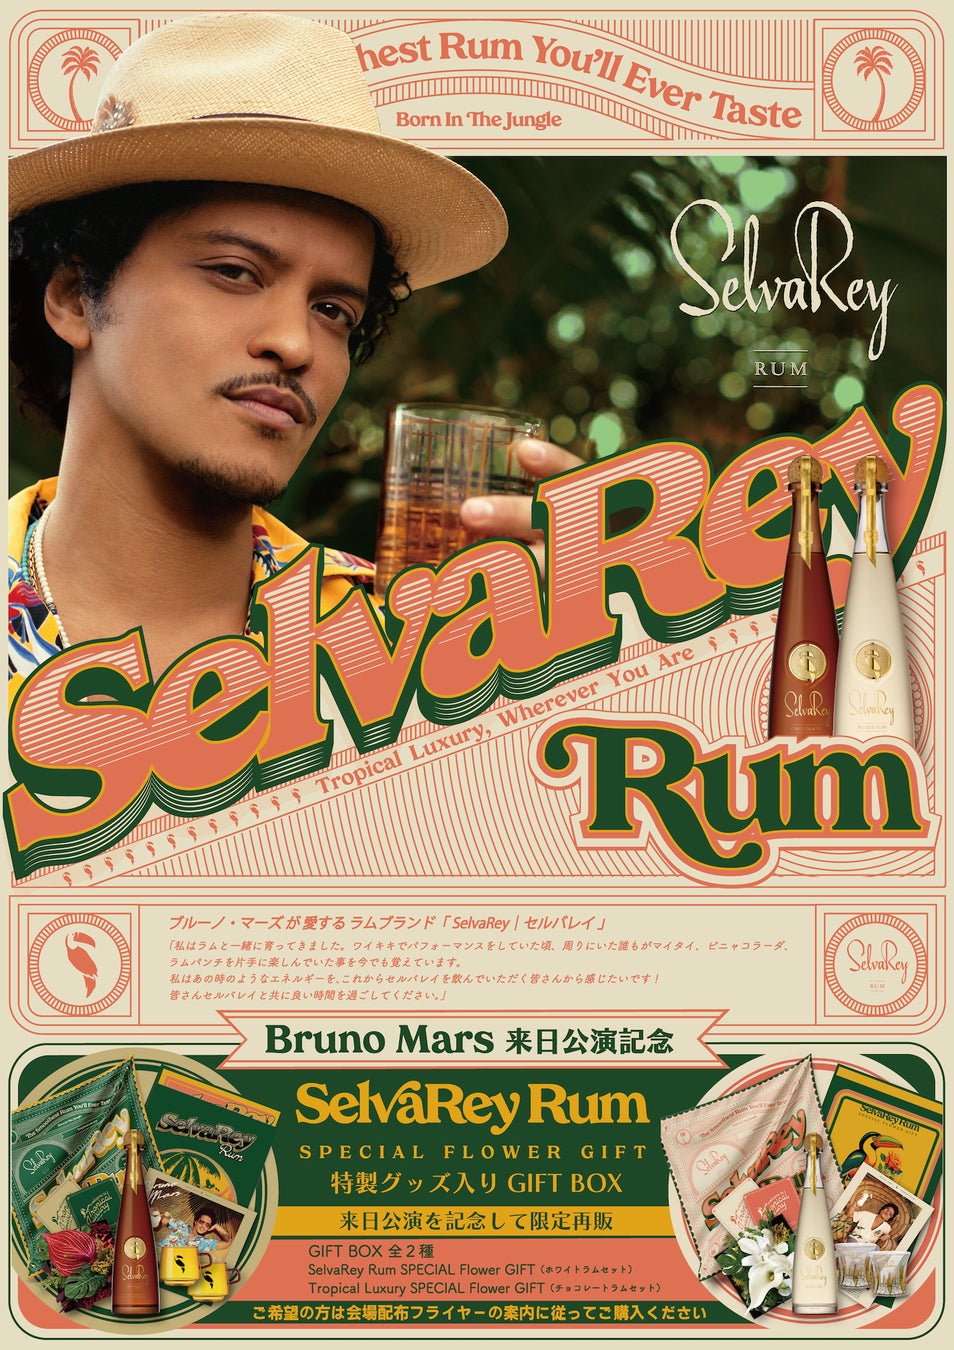 Bruno Mars来日公演記念！ブルーノ・マーズが愛するラムブランド「SelvaRey｜セルバレイ」特製グッズ入りGIFT BOX限定再販。1/11(木)から1/22(月)まで